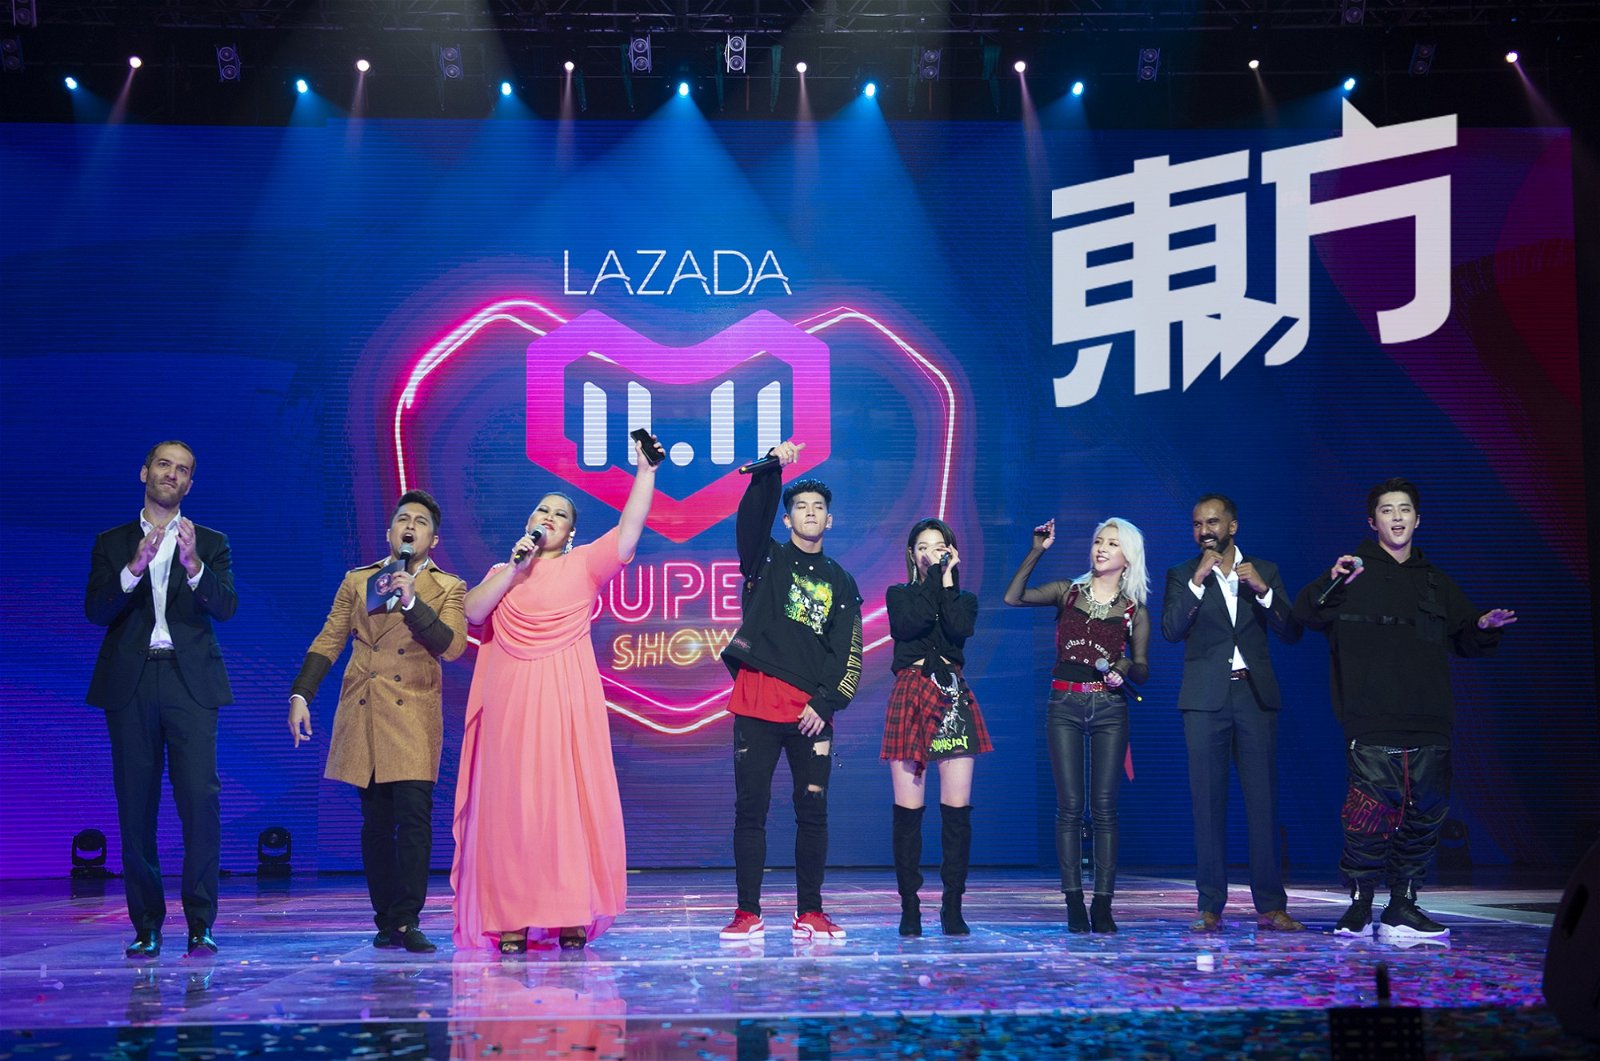 作为阿里巴巴在东南亚最得意 的“门生”，Lazada承了母公司精髓—— 造节， 大促和娱乐 营销。图为品牌于去年举办的双 11购物盛会——11.11 Shopping Festival，除了推出多屏购物体验之外，还举办有史以来首场星光熠熠的电视节目。